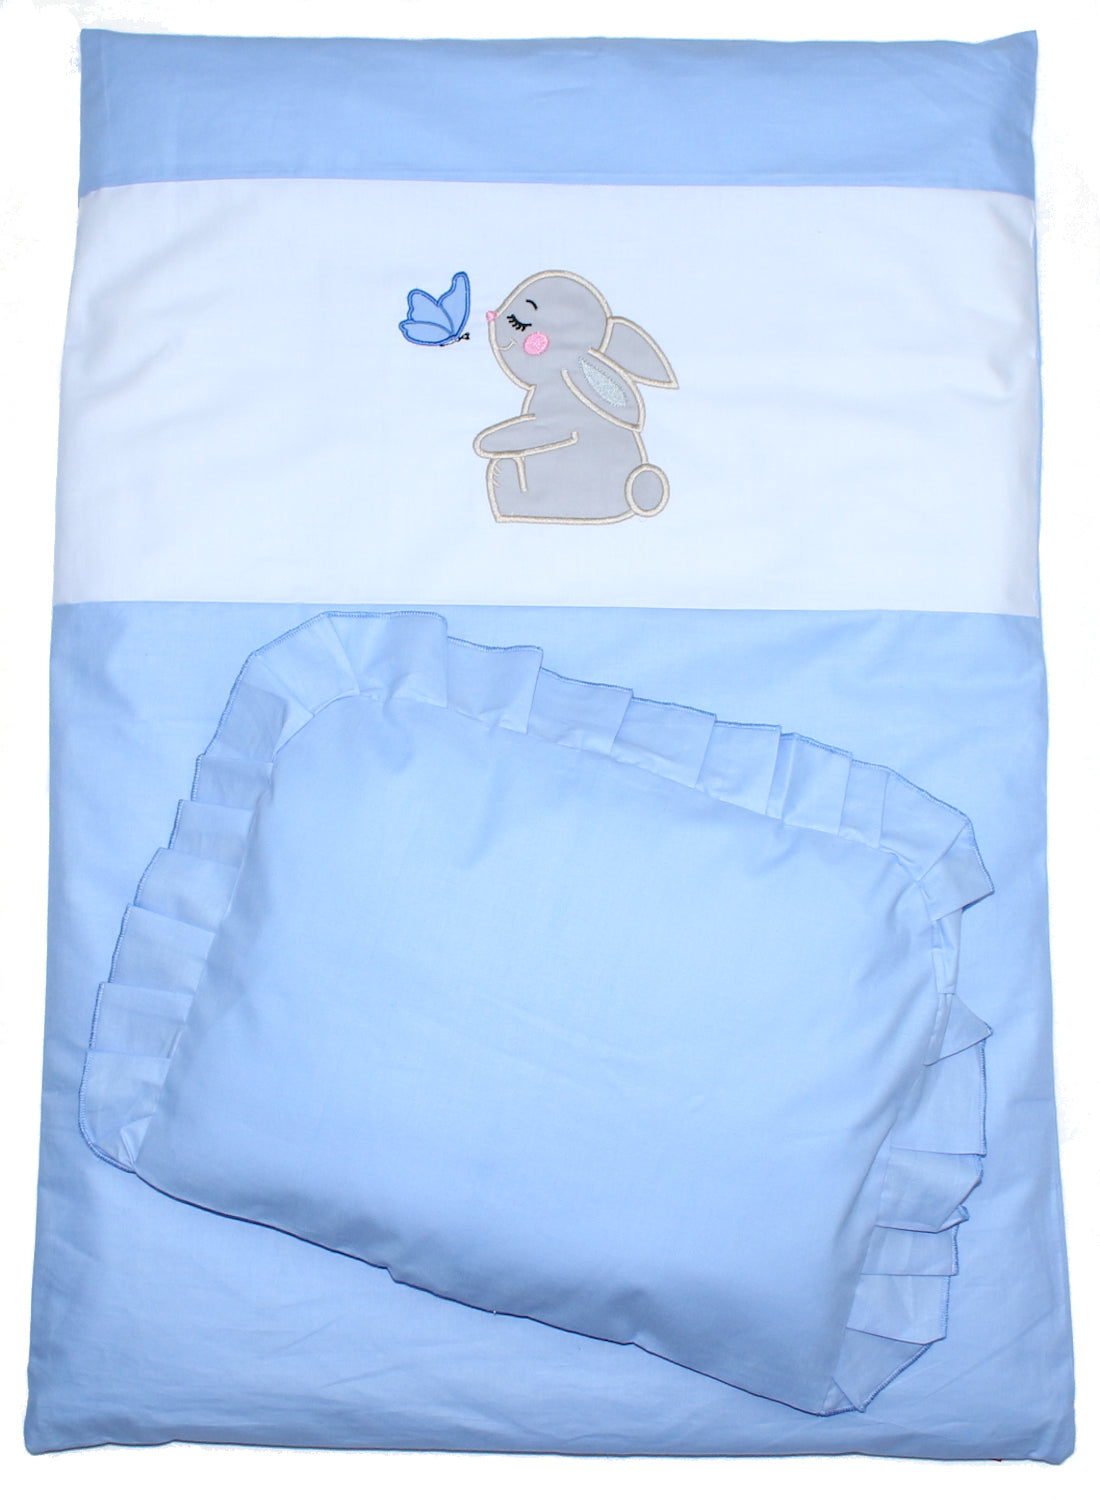 2- 4tlg Kinderwagenset - Hase- Blau - Bettwäsche für Kinderwagen Bezüge Decke Kissen